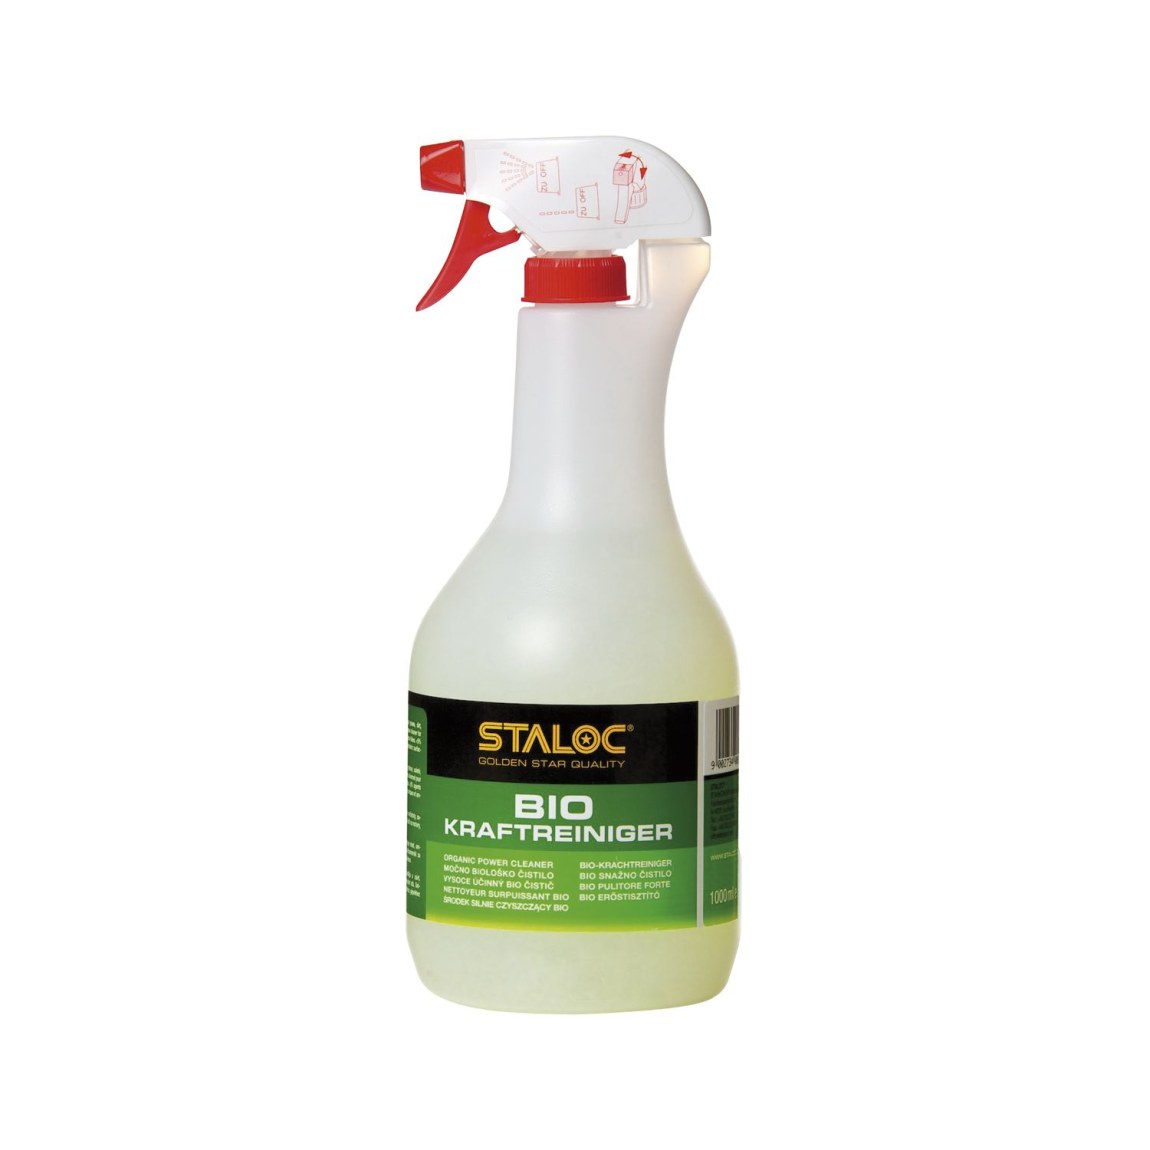 STALOC Bio čistič, lahev s rozprašovačem 1000 ml - Železářství Chemicko-technické výrobky Čističe, chladicí, kluzné mazací prostředky